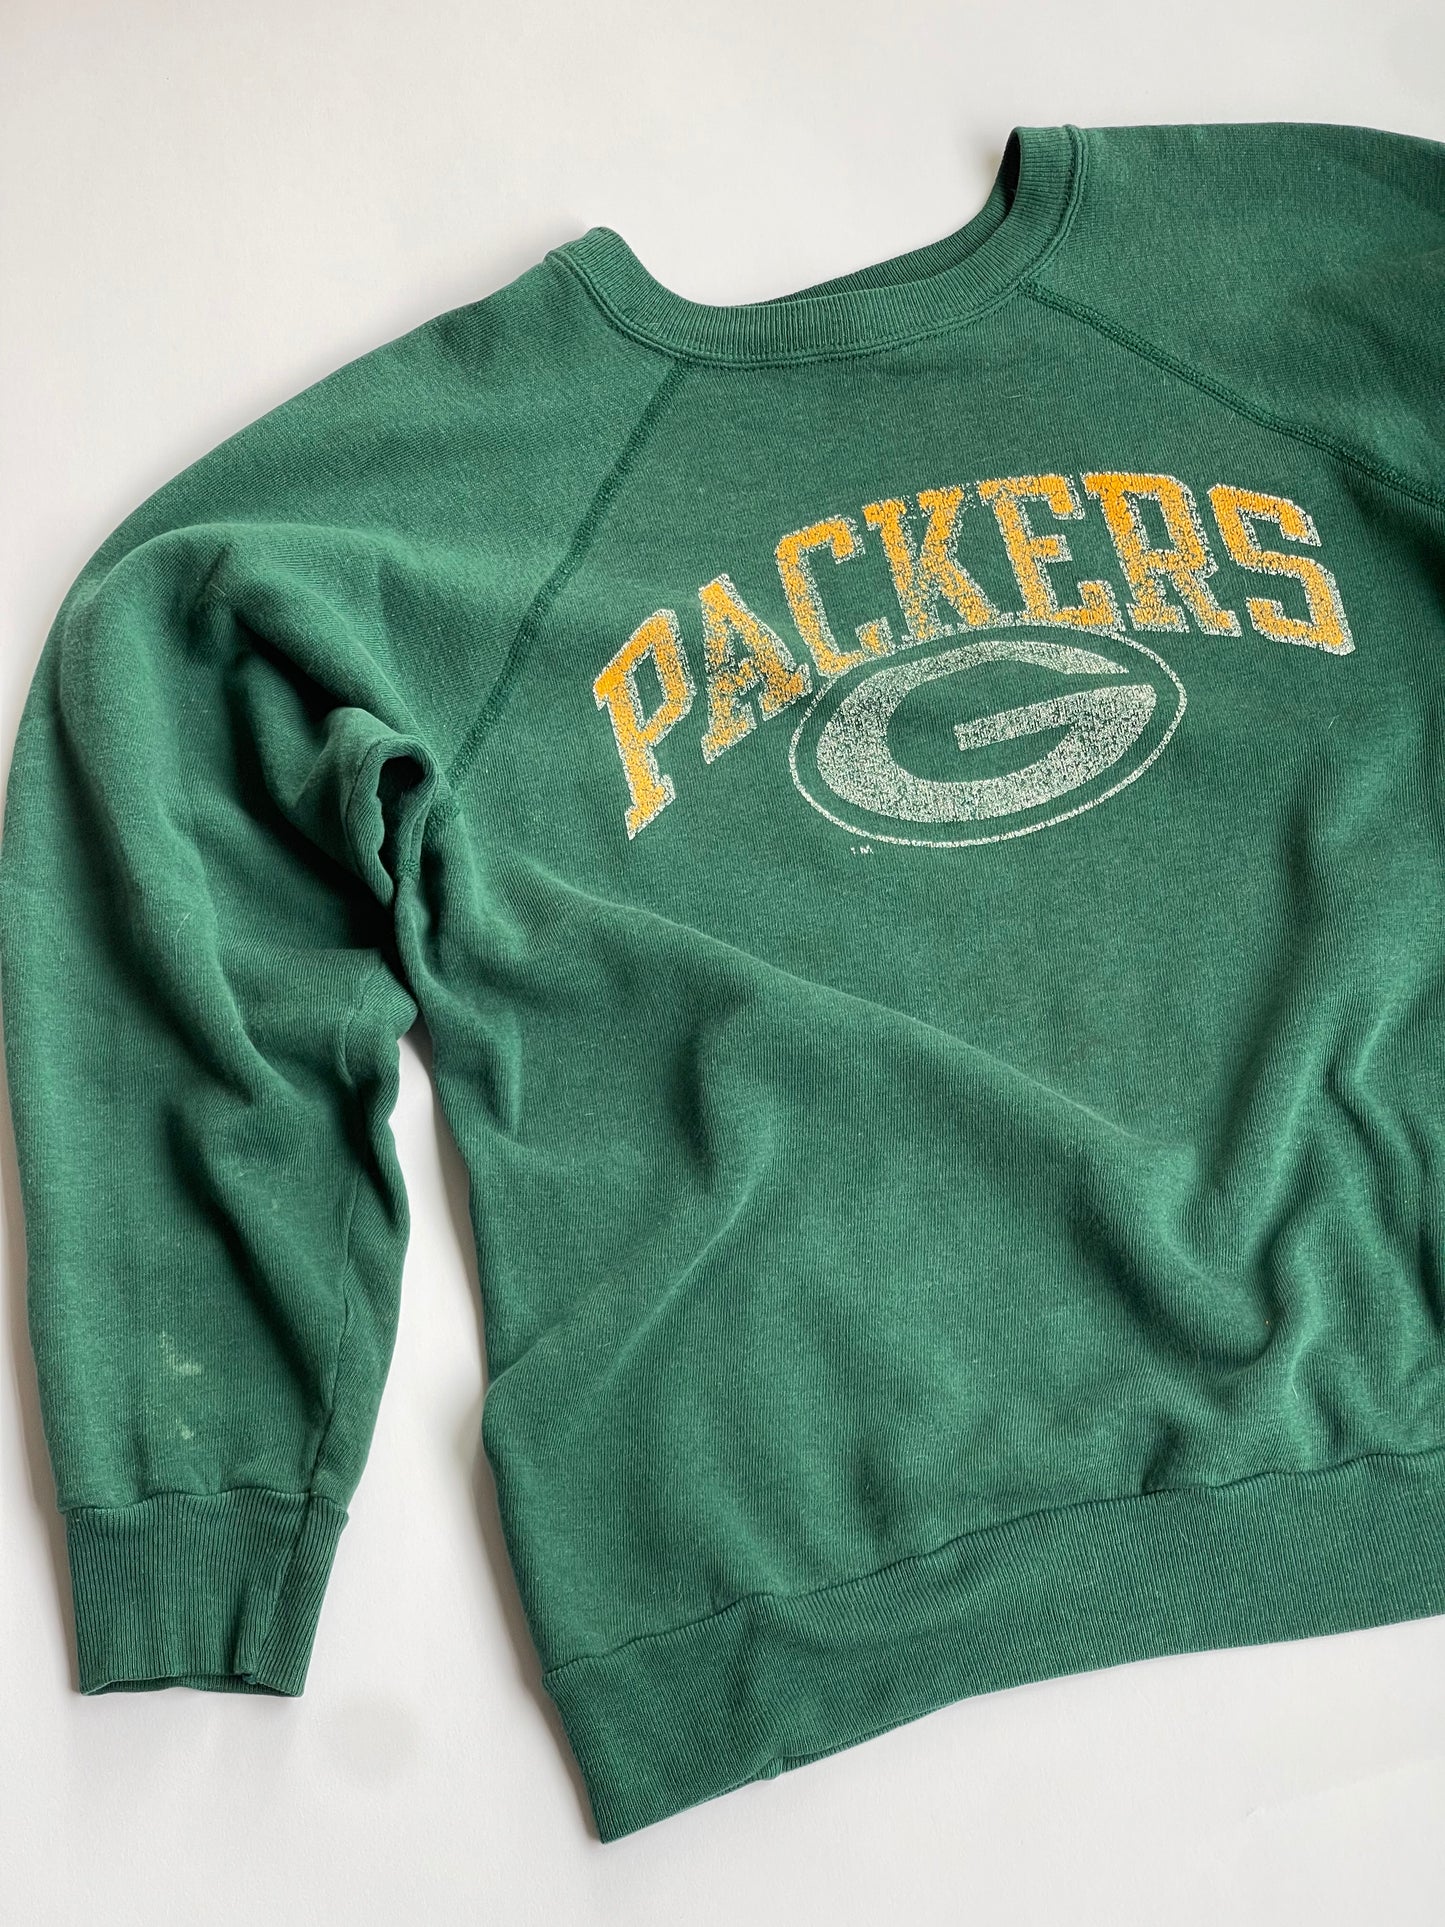 Vintage Green Bay Packers Raglan - S/M